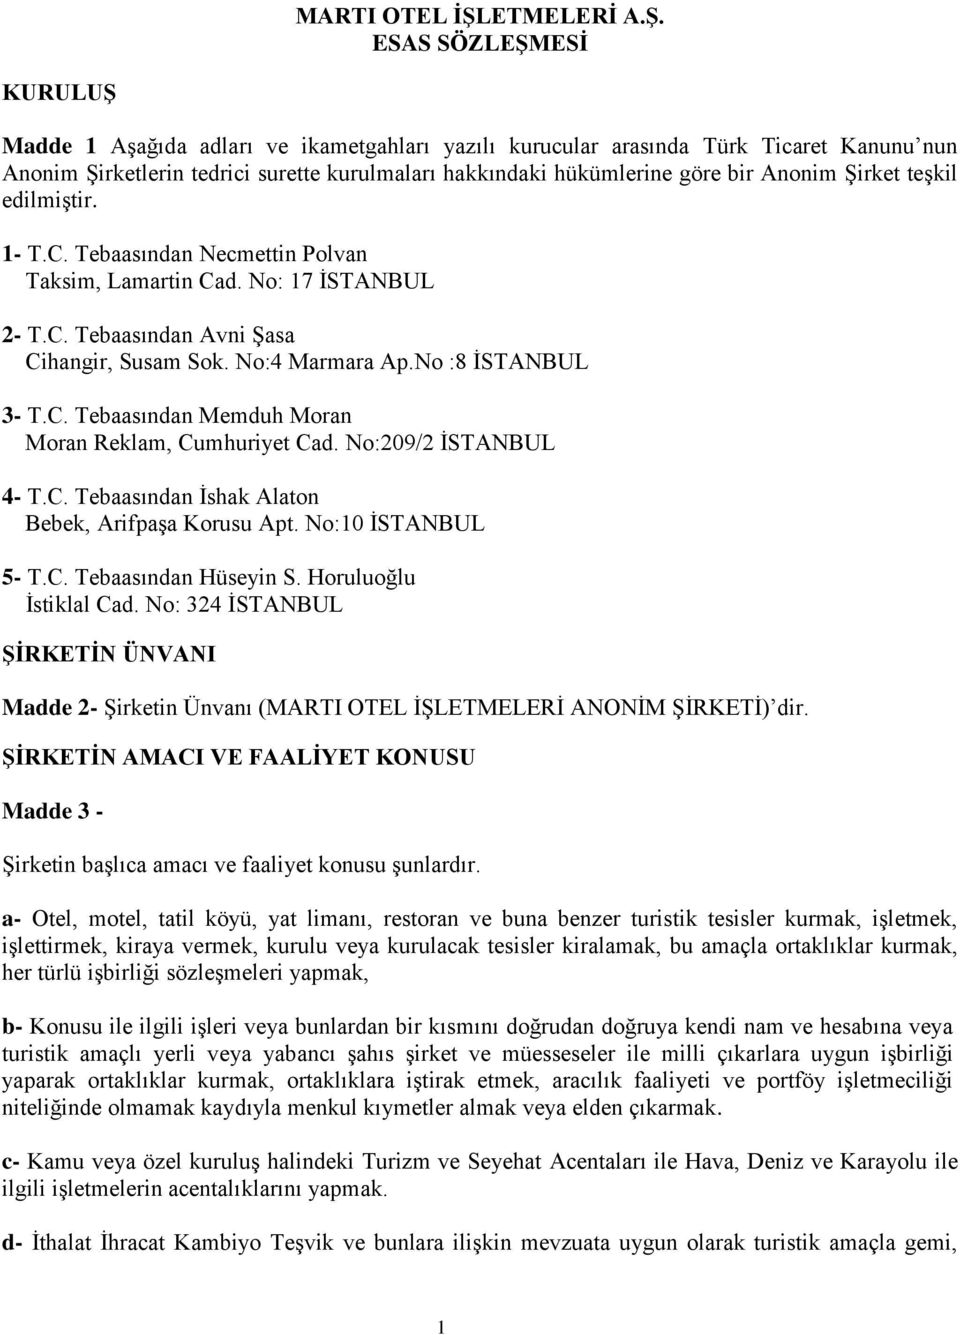 ESAS SÖZLEŞMESİ KURULUŞ Madde 1 Aşağıda adları ve ikametgahları yazılı kurucular arasında Türk Ticaret Kanunu nun Anonim Şirketlerin tedrici surette kurulmaları hakkındaki hükümlerine göre bir Anonim